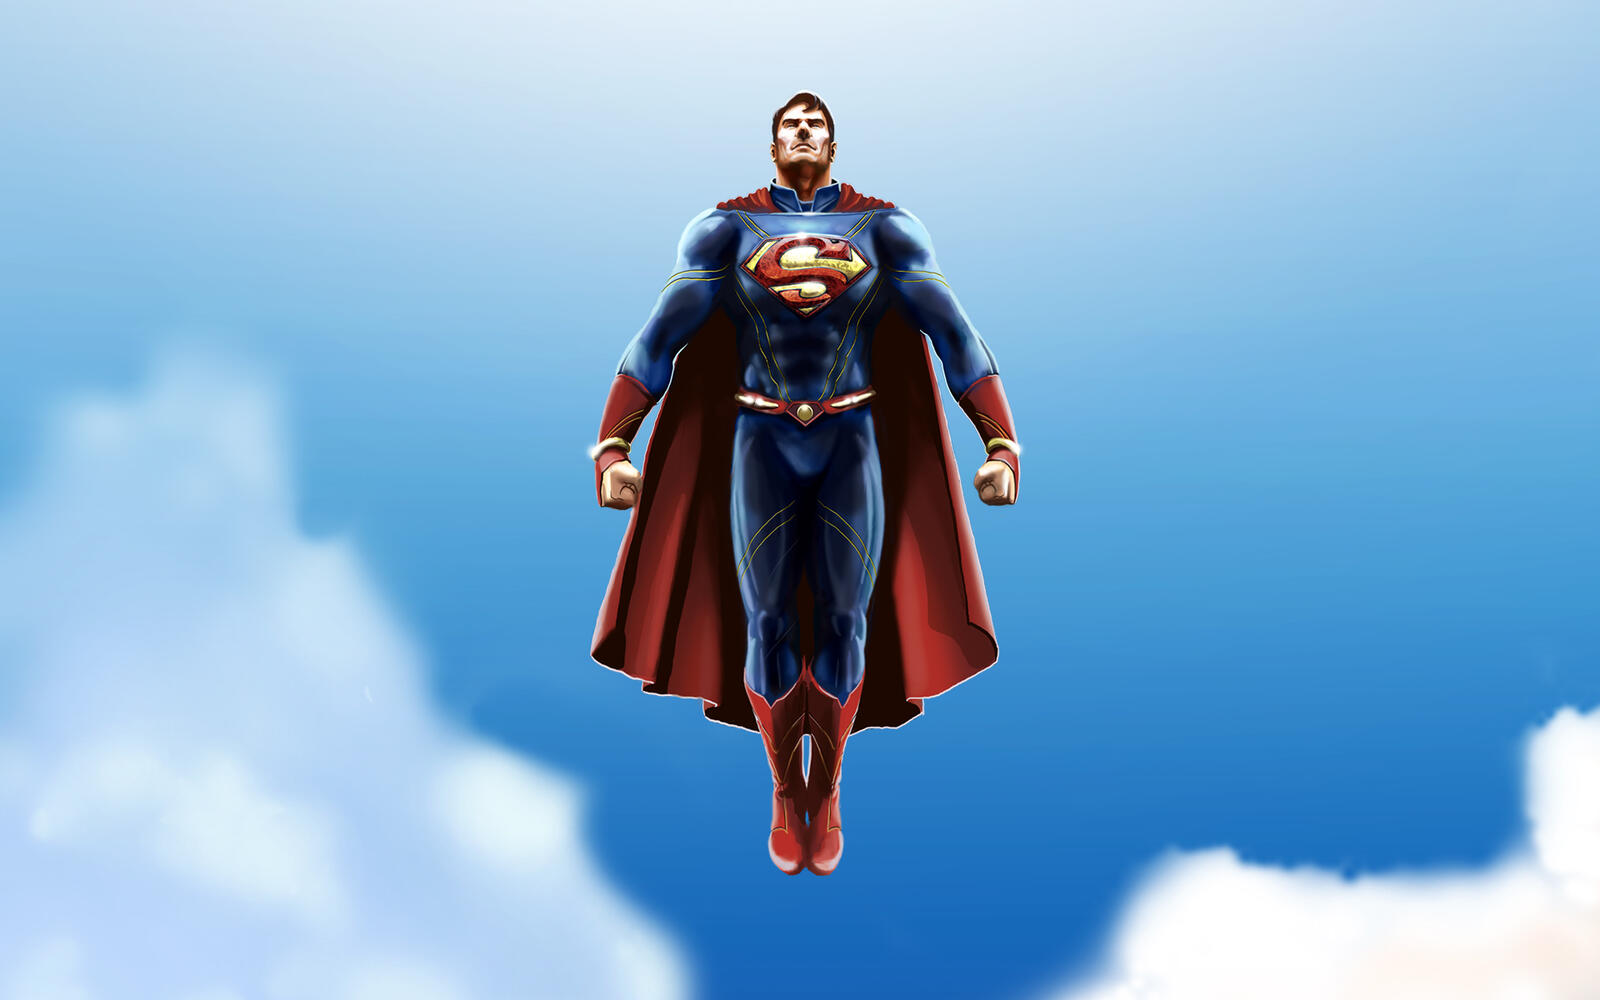 Wallpapers superman superheroes artwork on the desktop